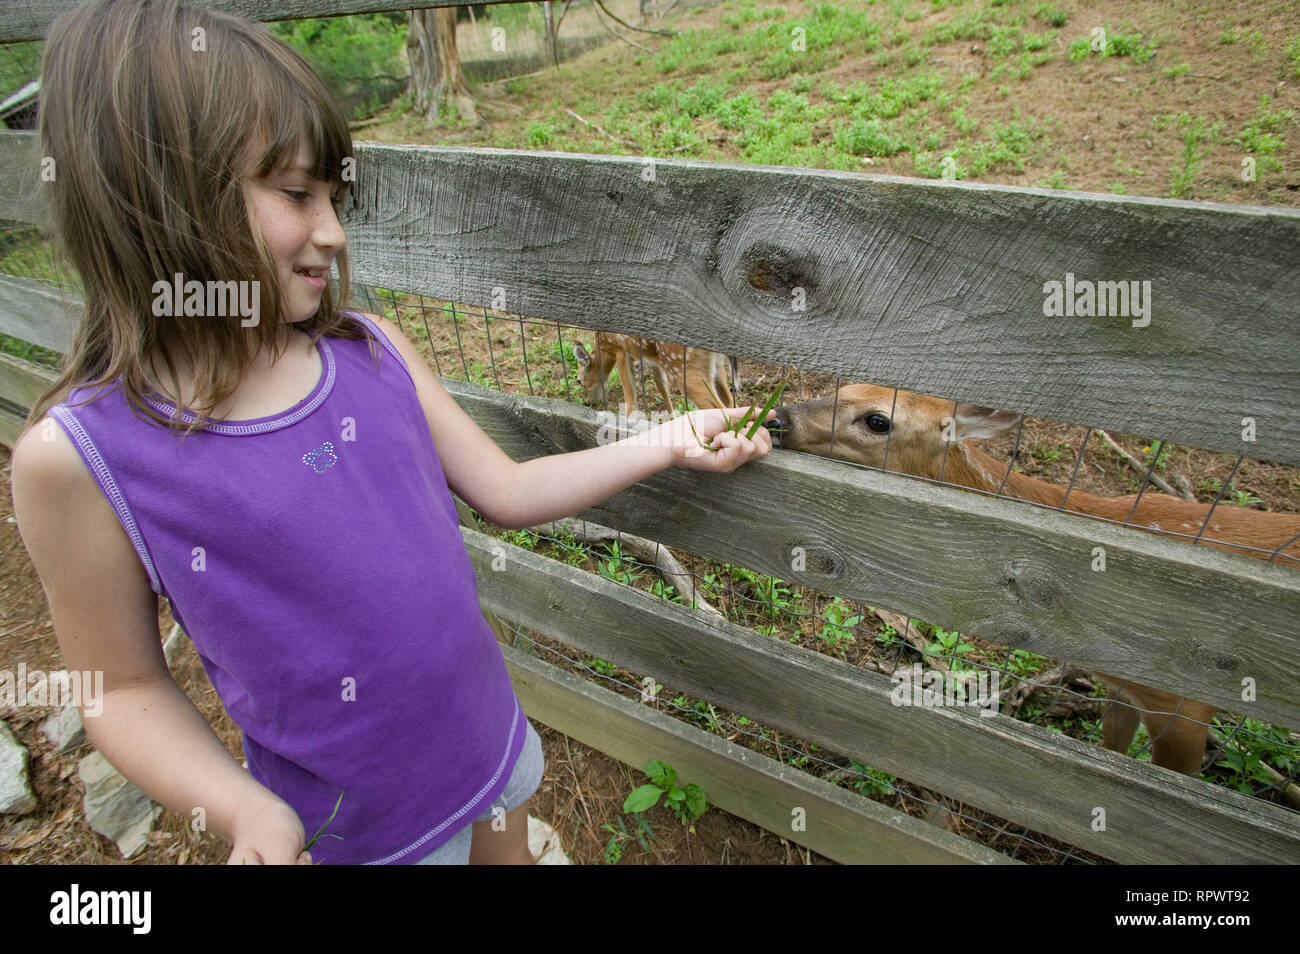 A girl feeds grass to a deer through a fence at the Bob Evans Farm in Rio Grande, Ohio Stock Photo